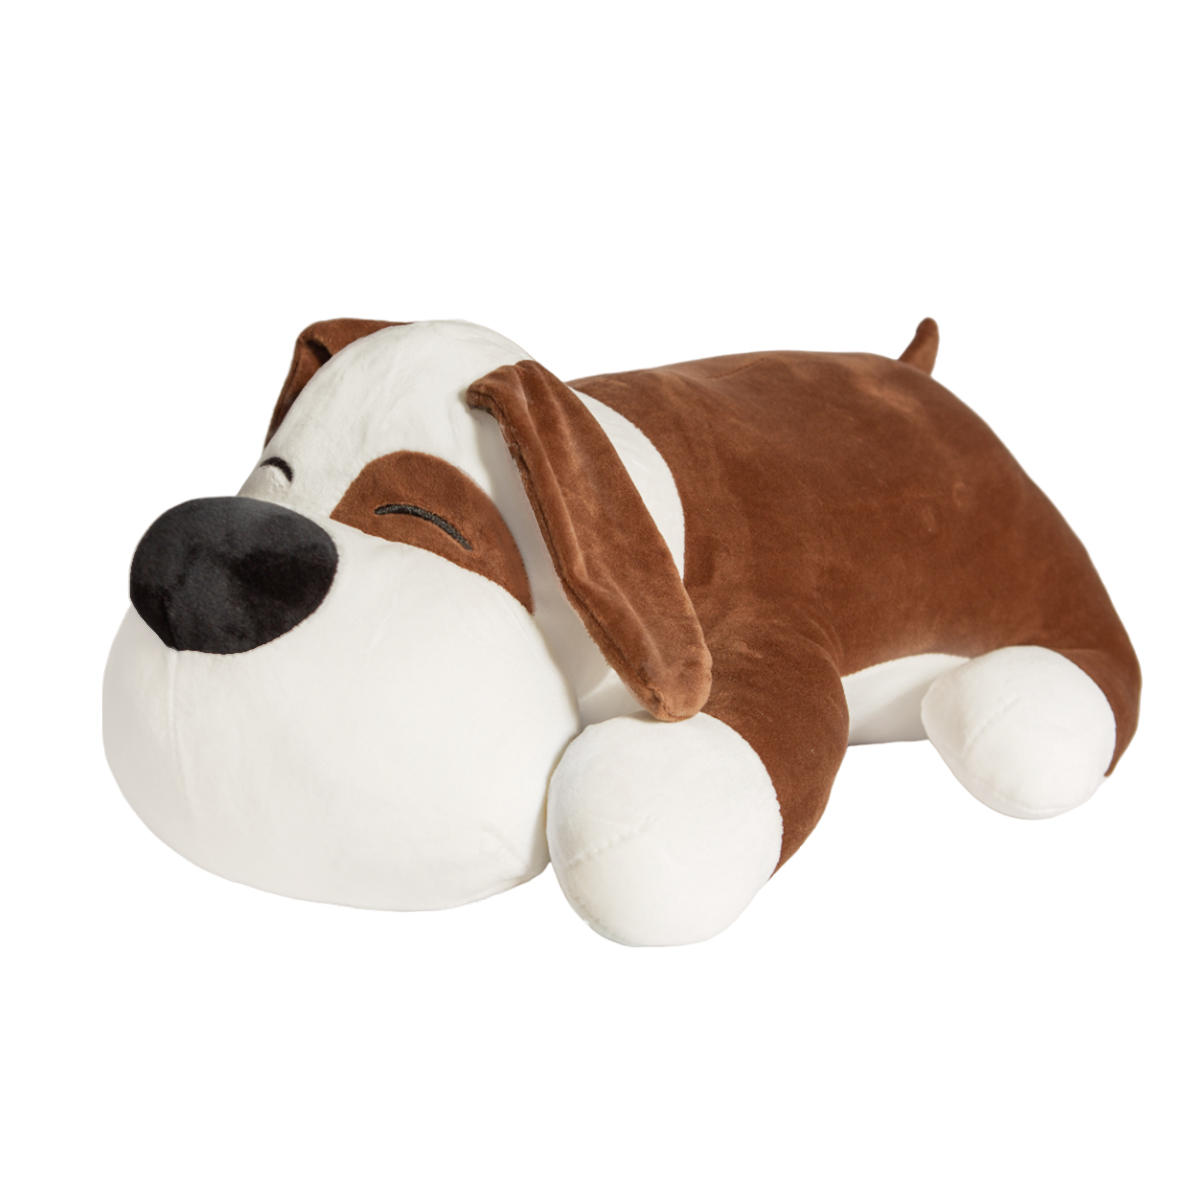 Мягкая игрушка MAXITOYS собака с пледом 60 см 300523-5-1-60 коричневый мягкая игрушка maxitoys мишка влюбленный коричневый 22 см